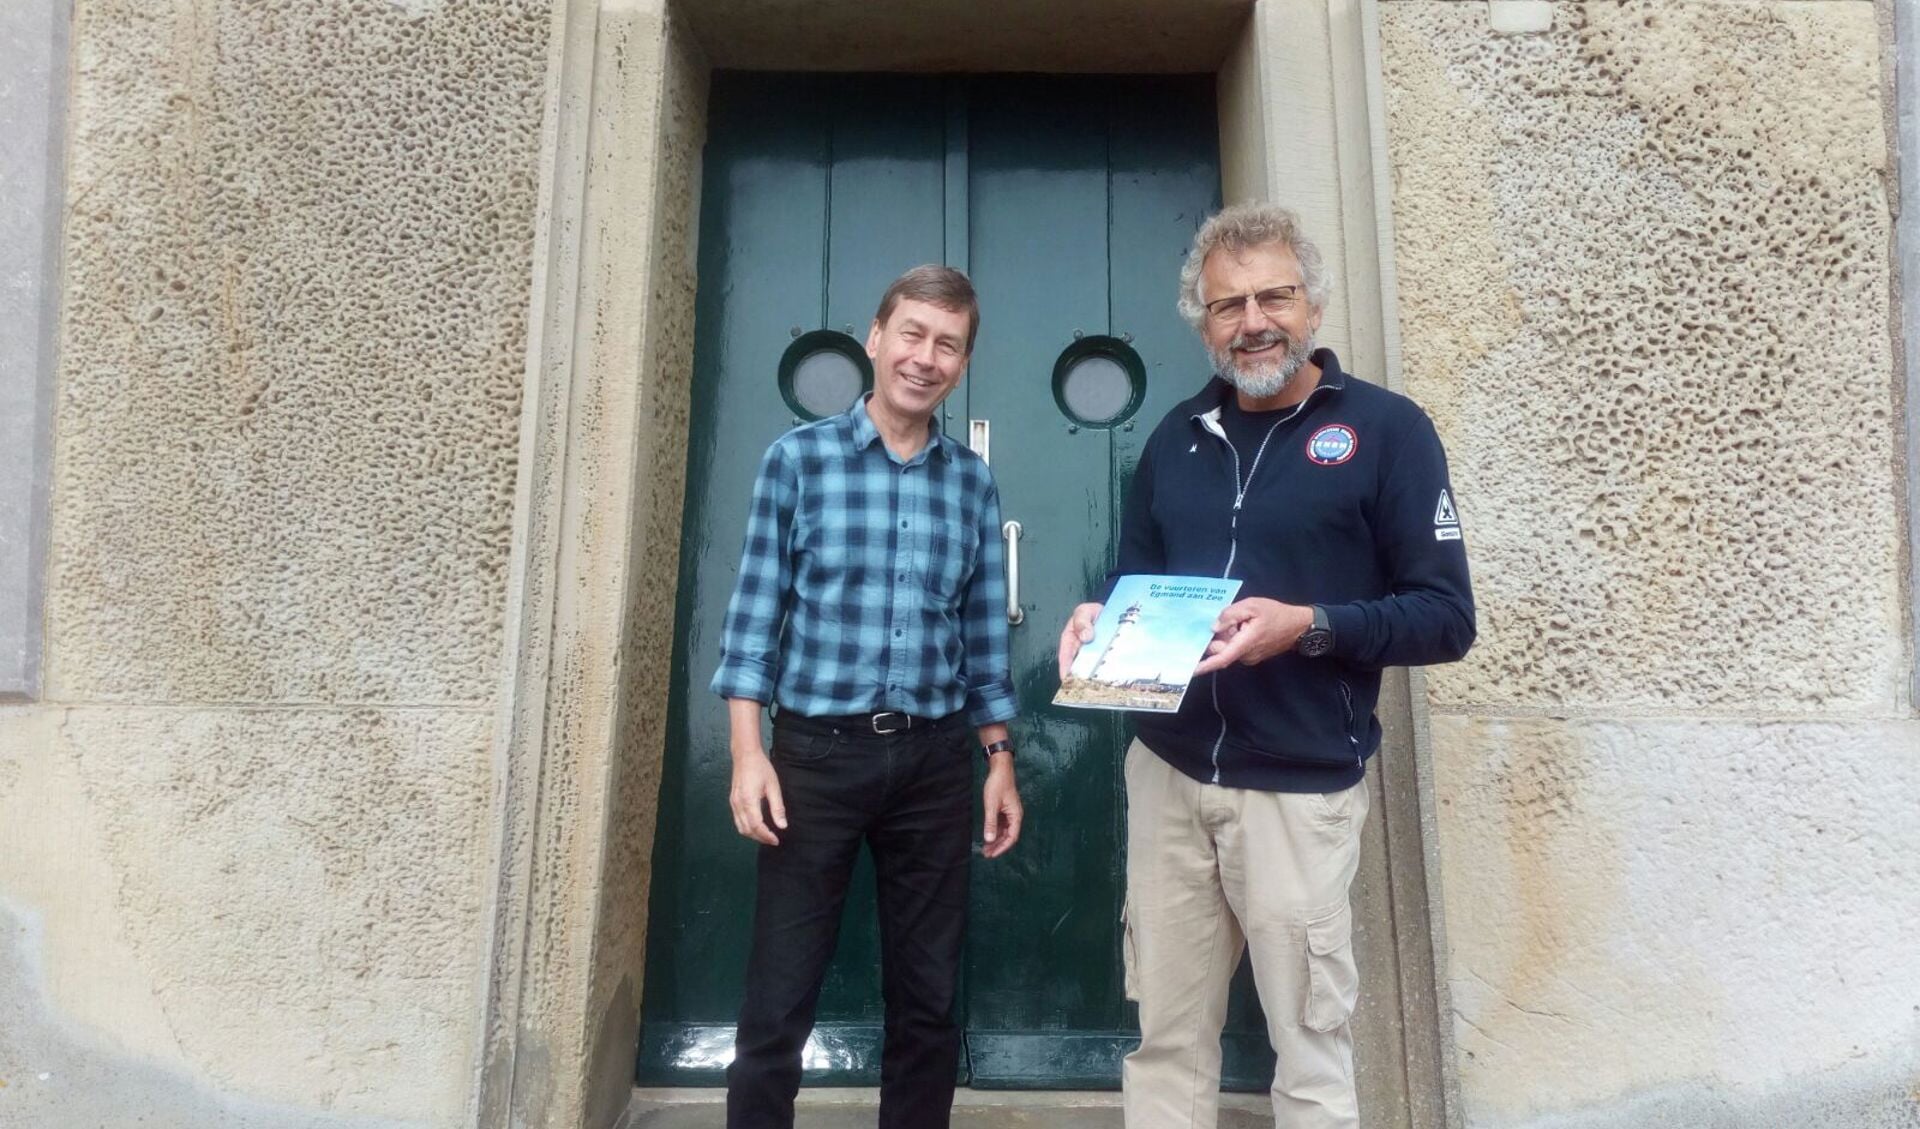 De KNRM ontving het boekje van schrijver Peter Kouwenhoven. Het boekje is tijdens de rondleidingen te koop voor vijf euro. (Foto: aangeleverd).